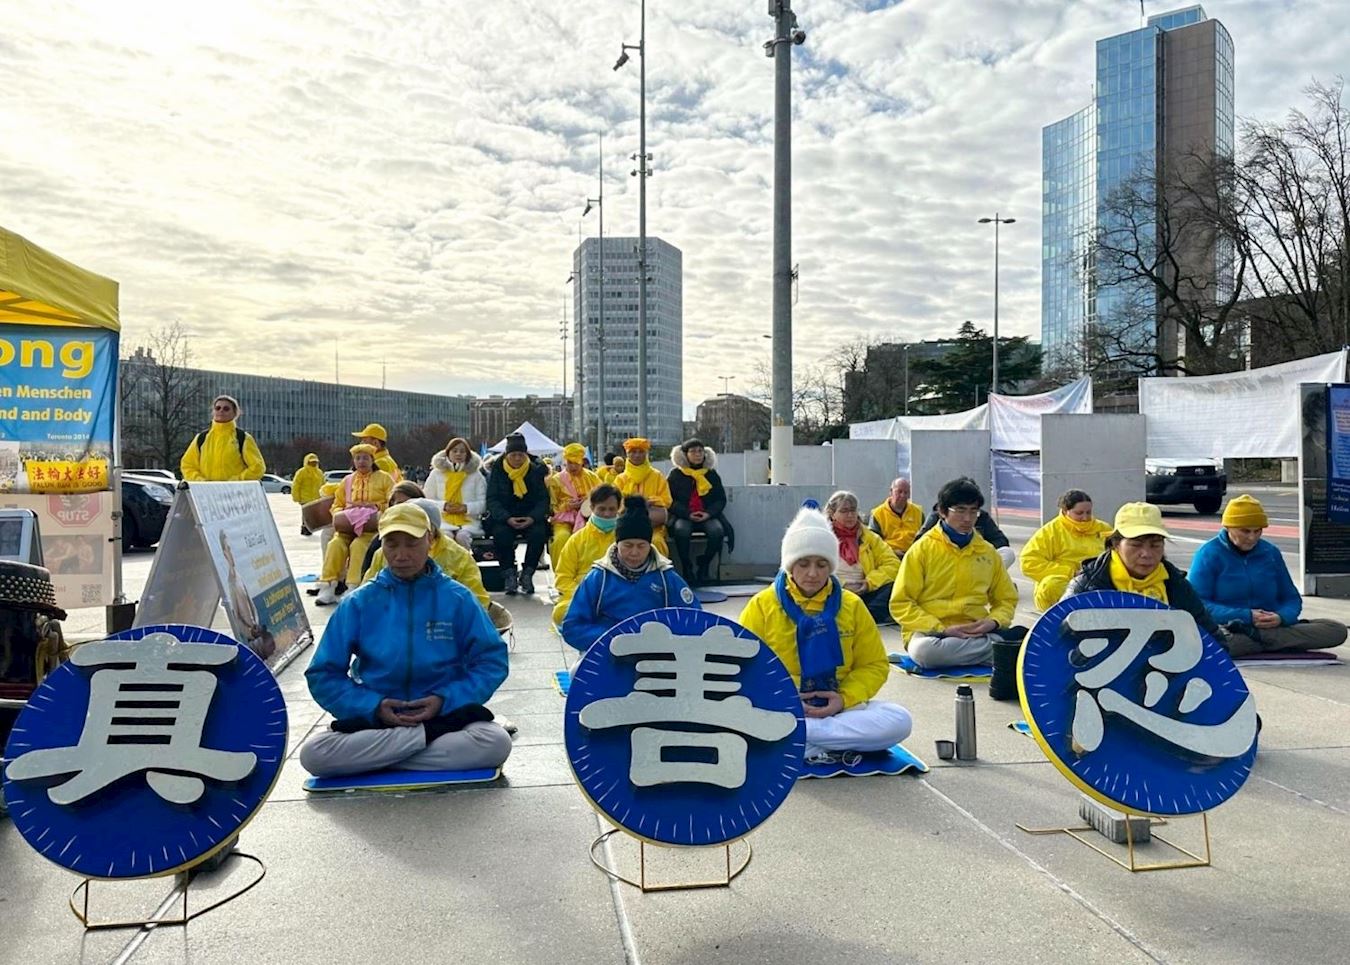 Image for article Ginevra, Svizzera: Appello per la fine della persecuzione del Falun Gong alla riunione del Consiglio dei diritti umani delle Nazioni Unite